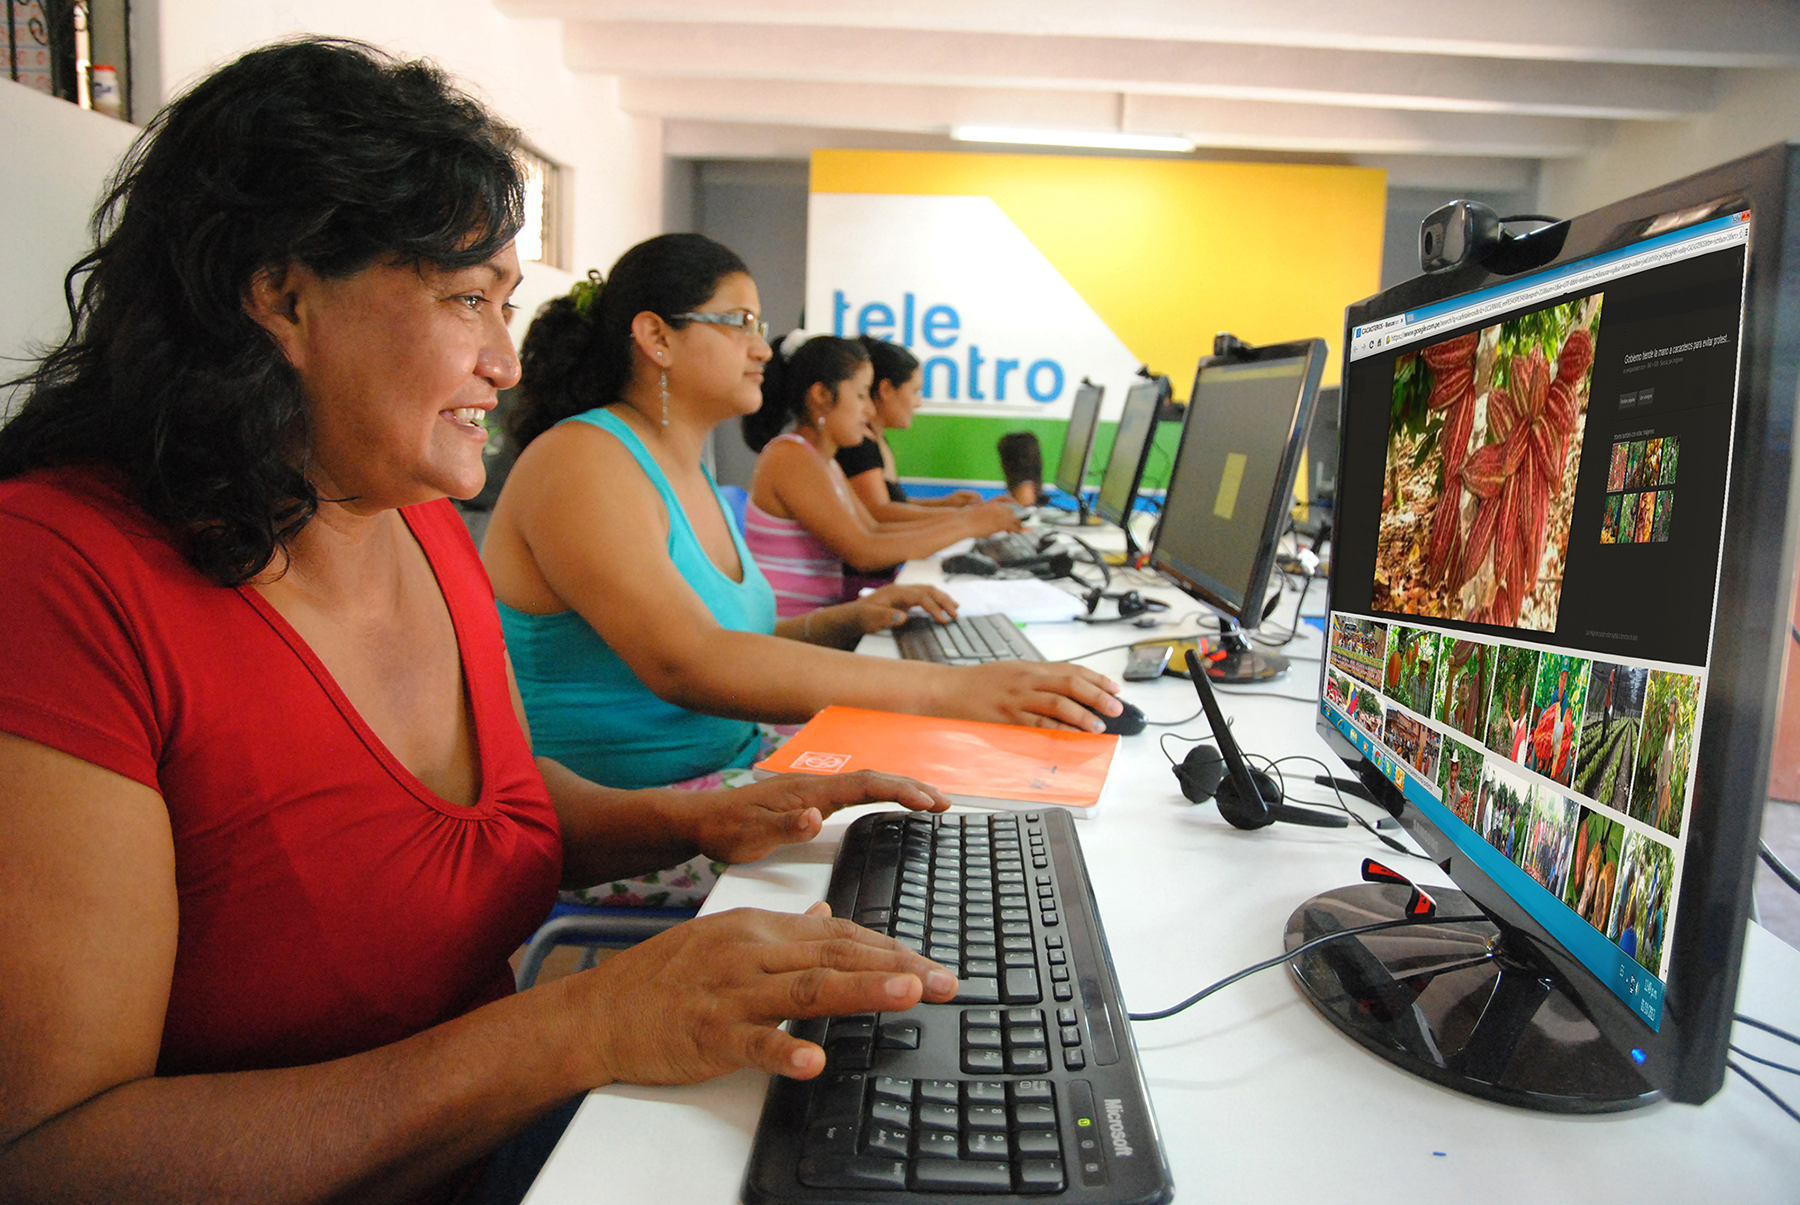 Internet llega a más de 102 localidades de las regiones San Martín, Huánuco y Ucayali